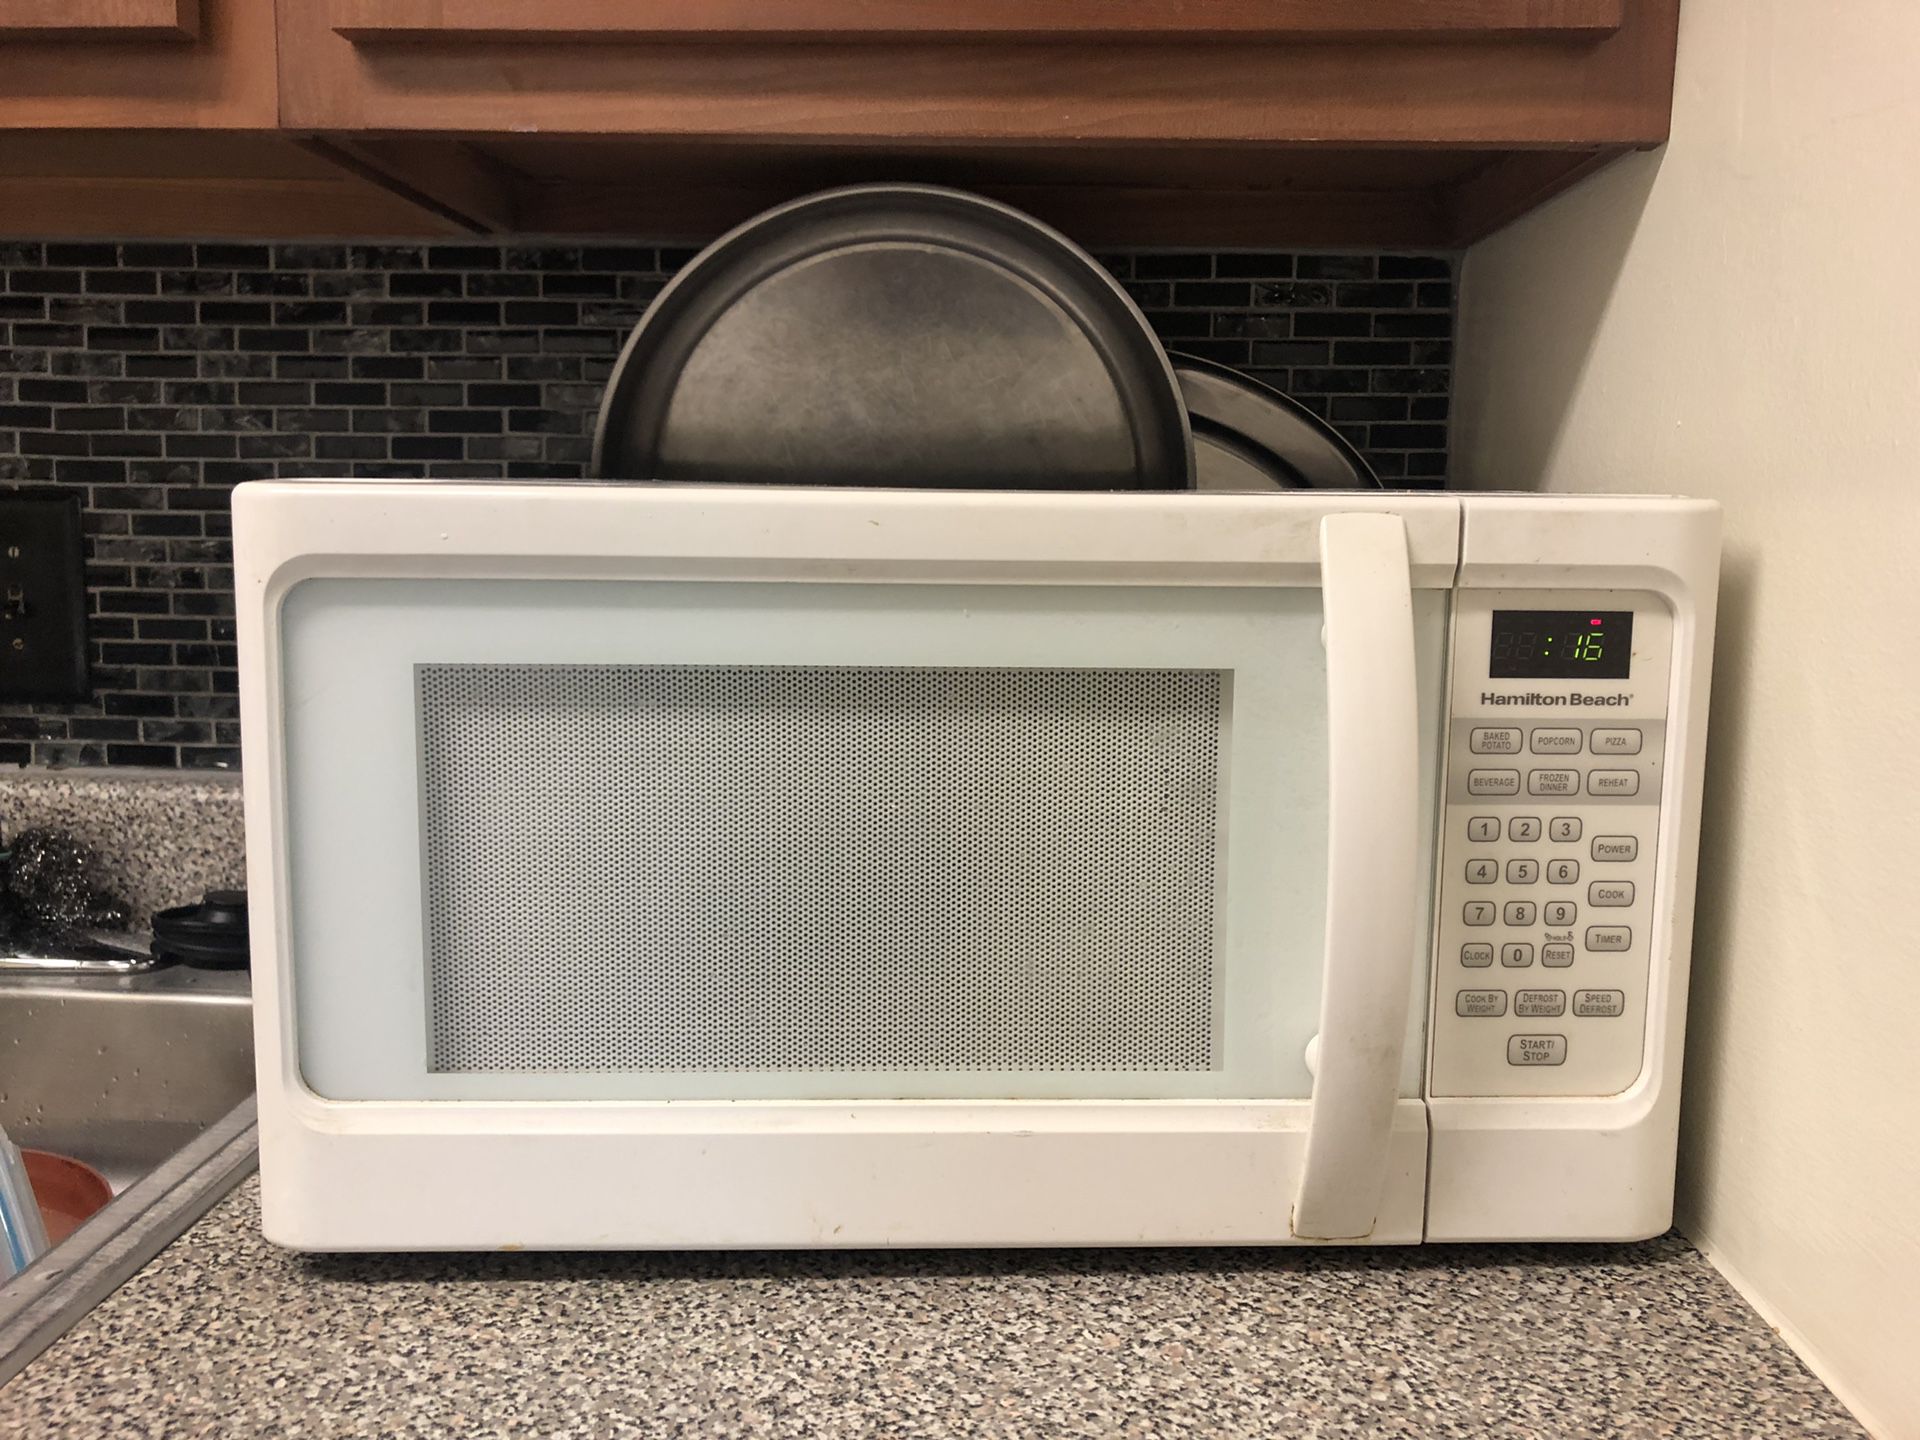 Microwave$ 10